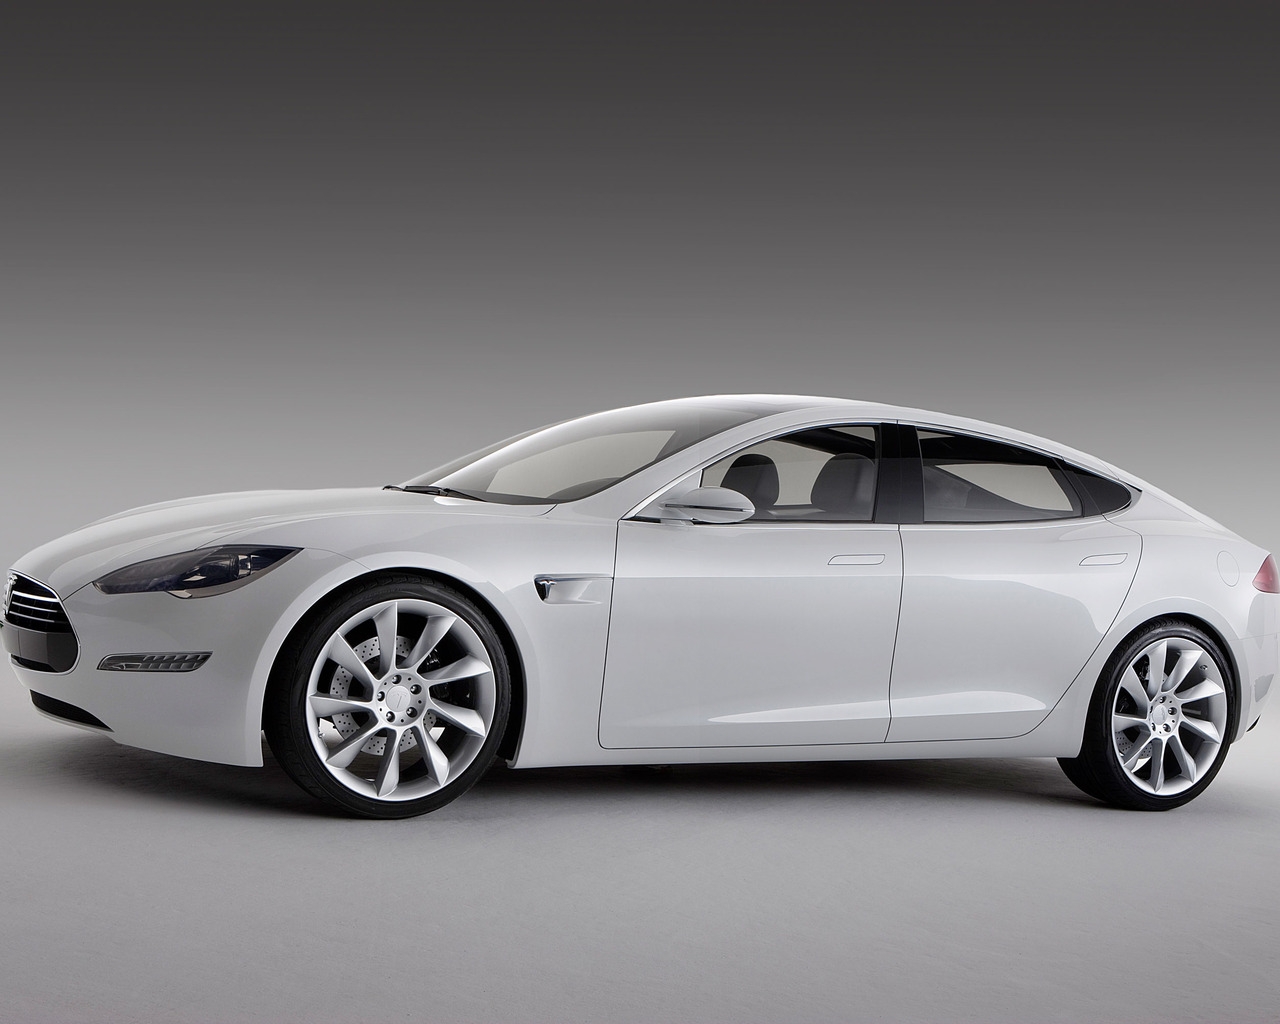 White Tesla Model S for 1280 x 1024 resolution